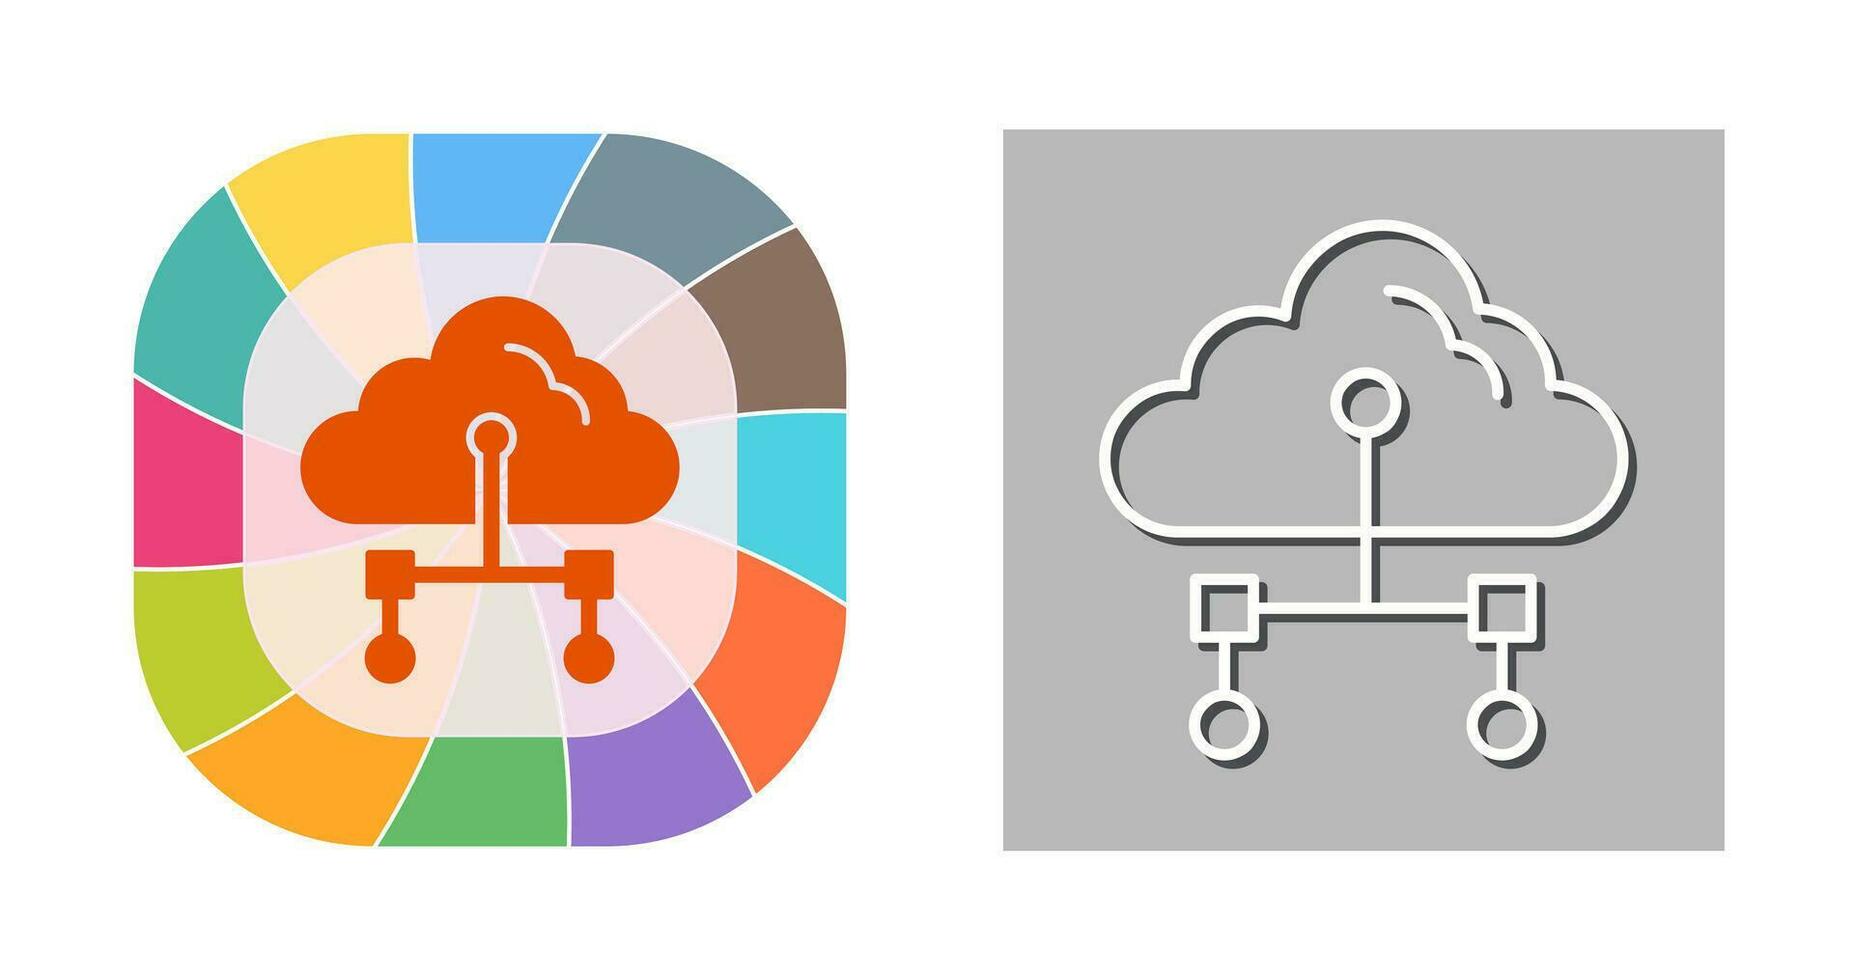 Internet Cloud Vector Icon